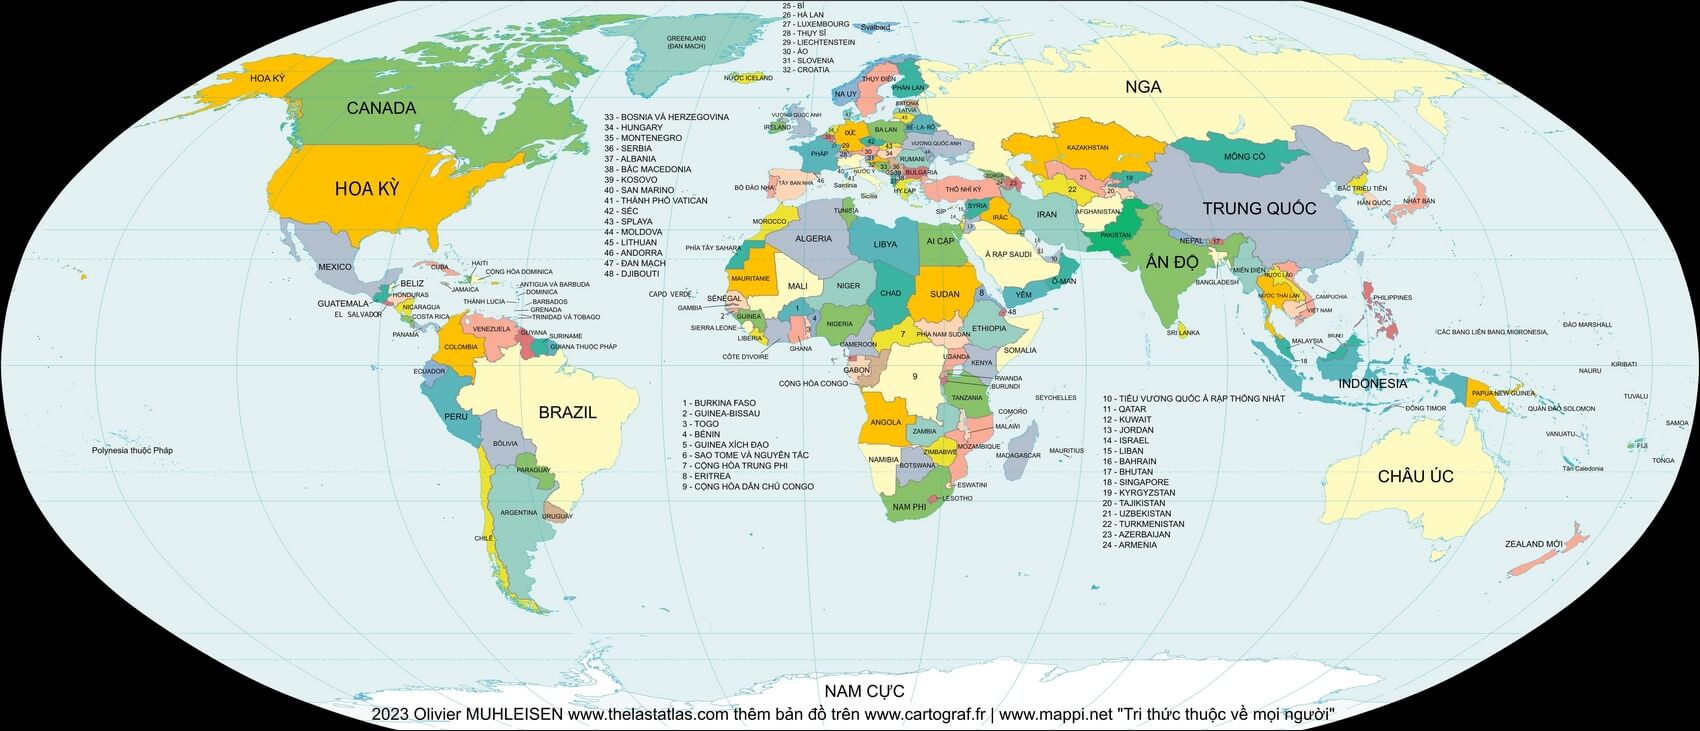 Mapa mundi com países em vietnamita